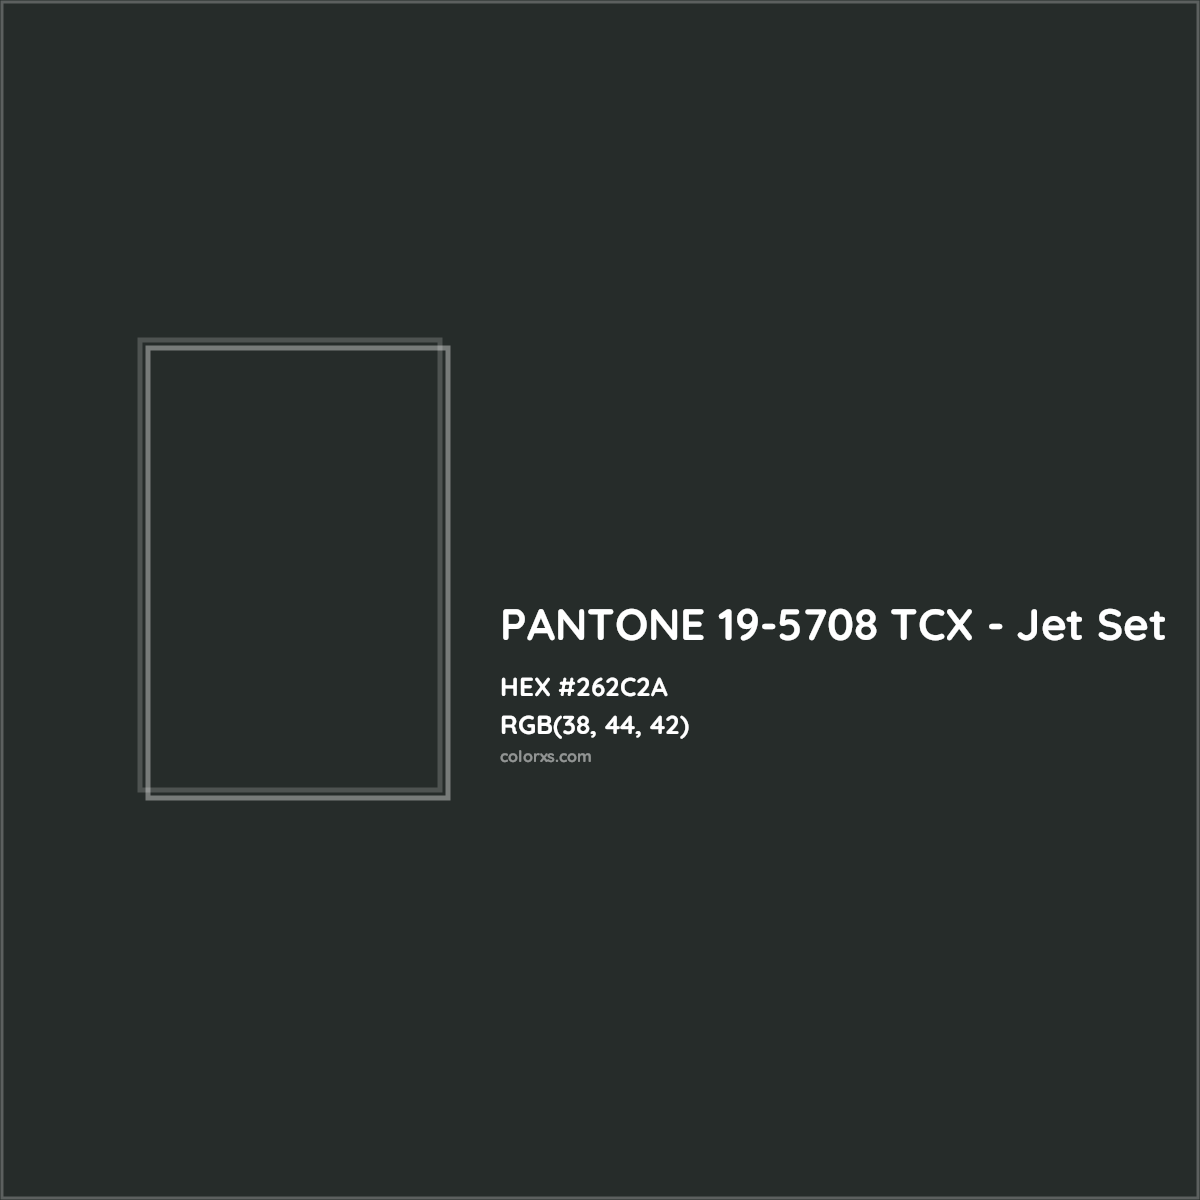 HEX #262C2A PANTONE 19-5708 TCX - Jet Set CMS Pantone TCX - Color Code